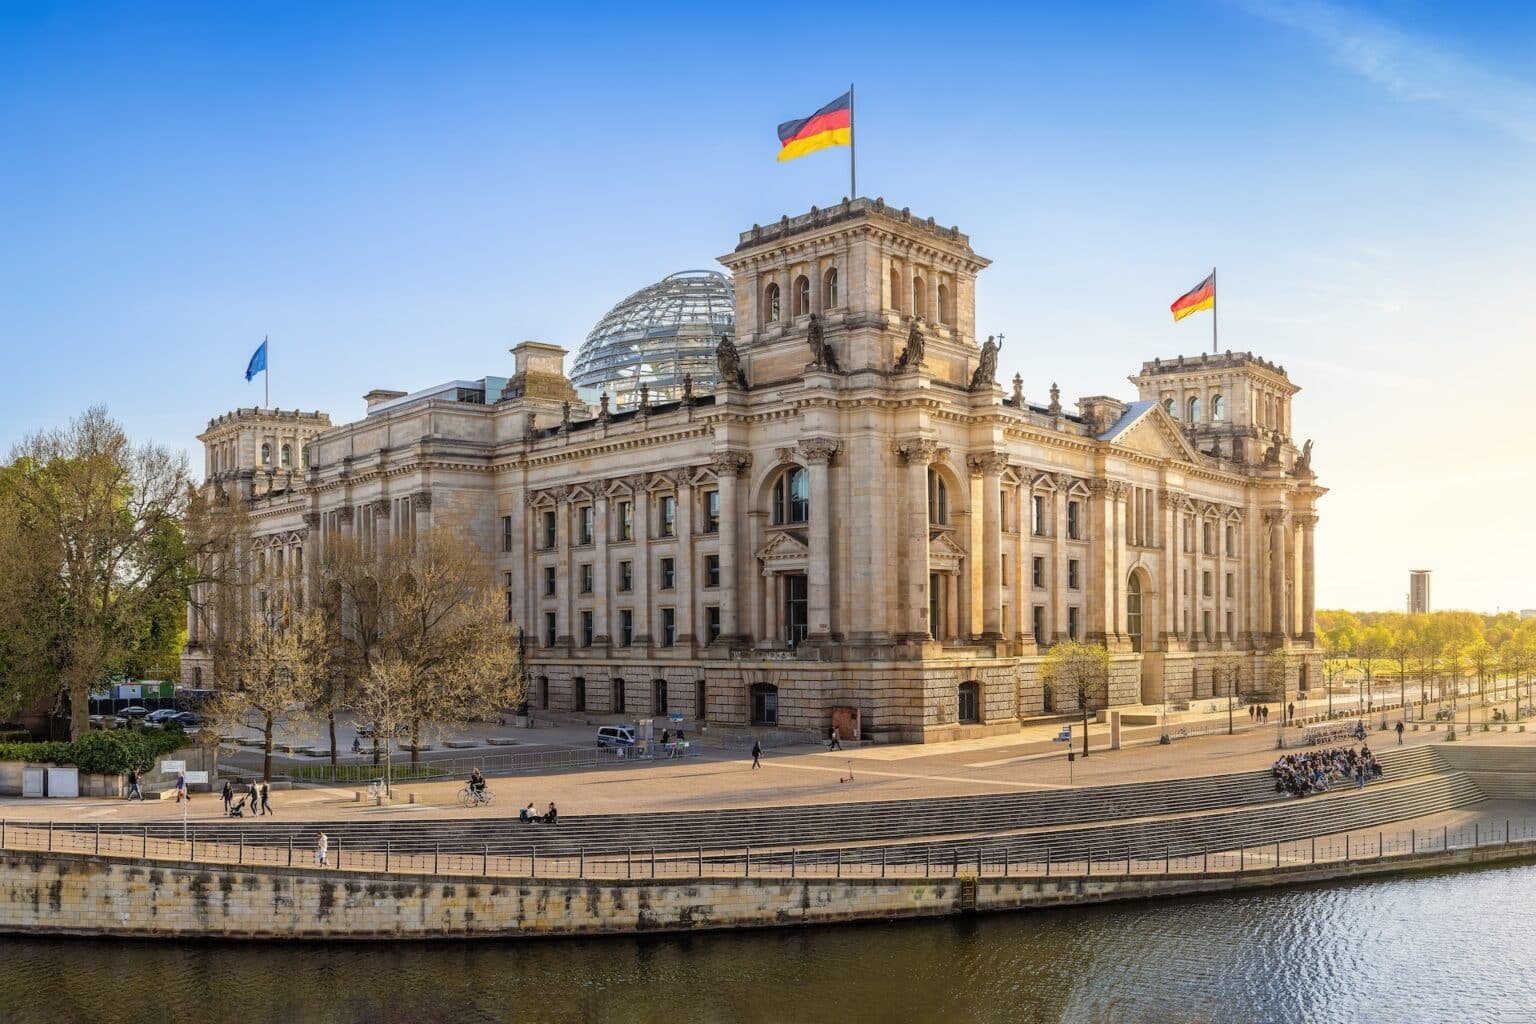 Reichstag-berlin-Politik